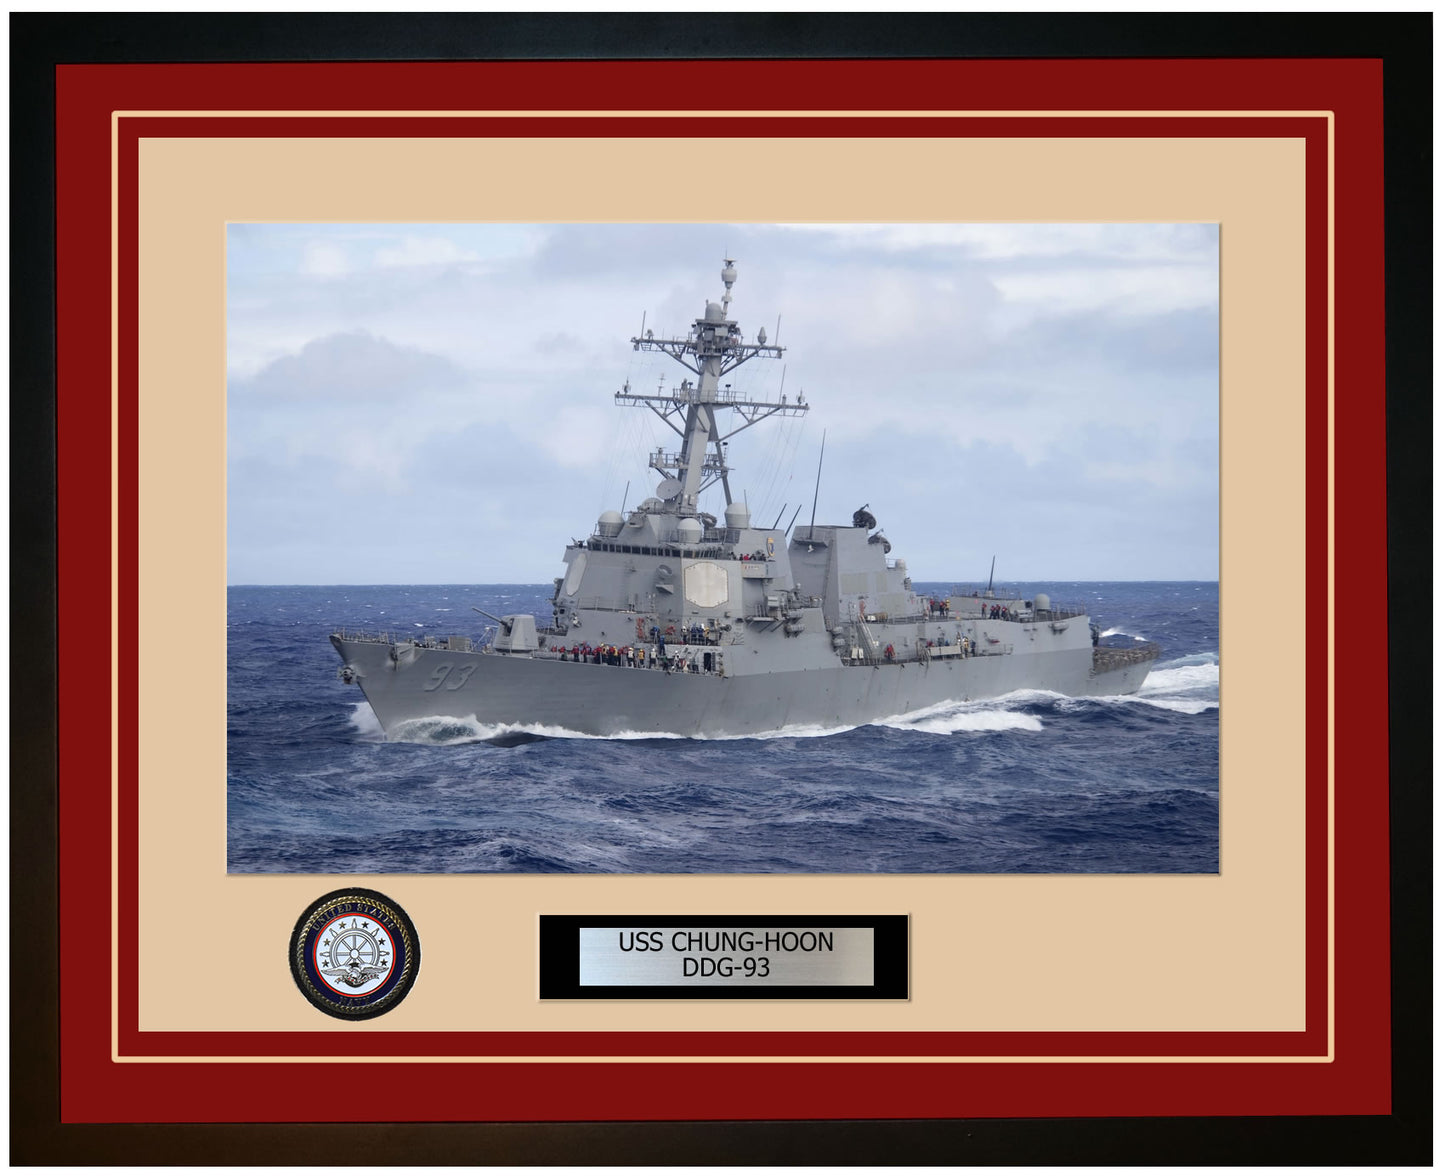 USS CHUNG-HOON DDG-93 Framed Navy Ship Photo Burgundy